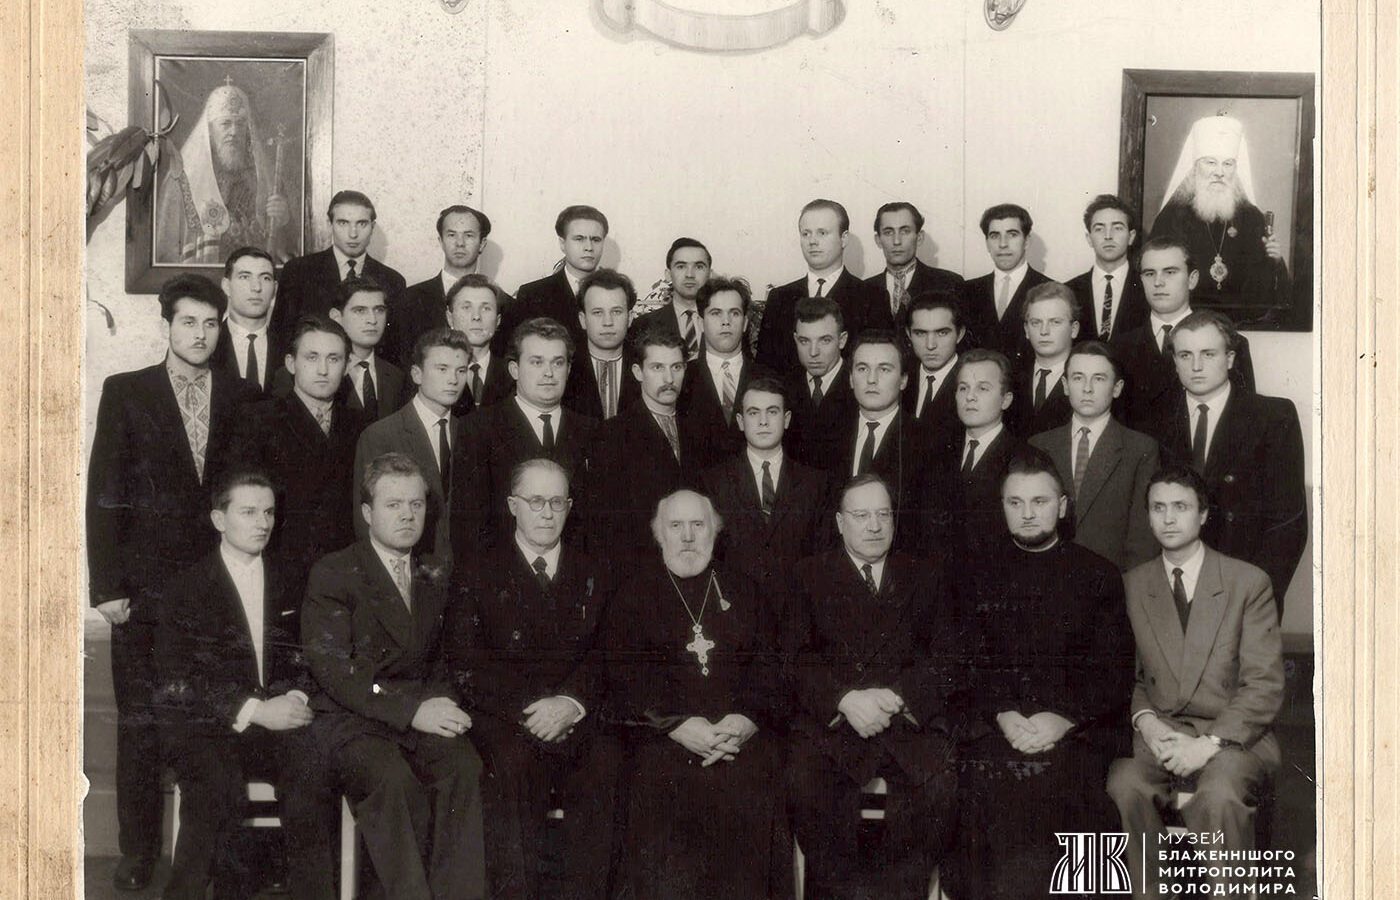 Експозиція поповнилася світлиною студентських років Митрополита Володимира. фото випускного курсу Ленінградської духовної академії 1962 року